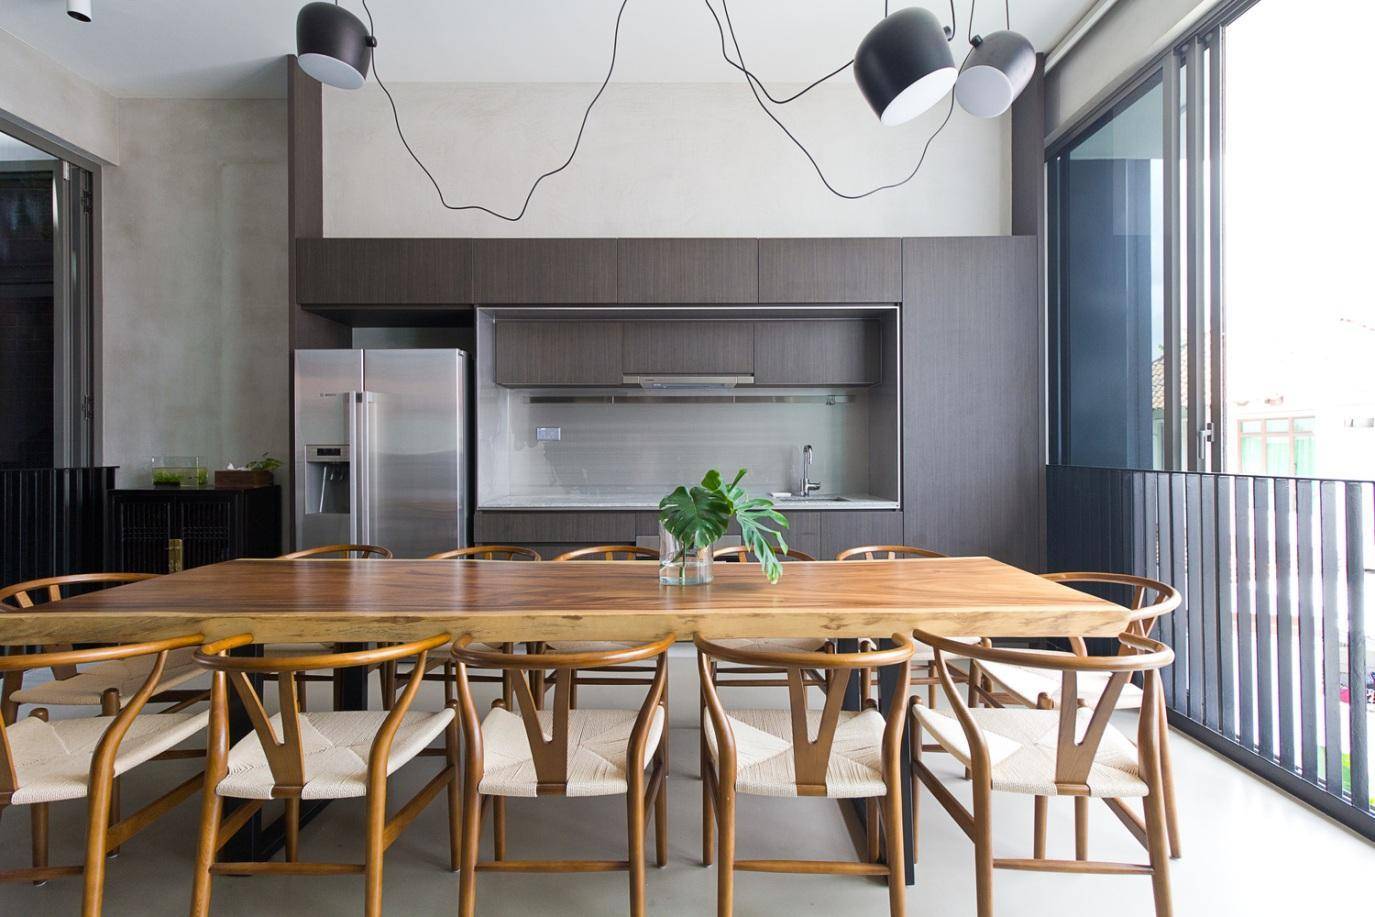 Khu vực bếp và bàn ăn phía trong không hề tách biệt với không gian bên ngoài nhờ hệ cửa gấp có thể đóng – mở linh hoạt